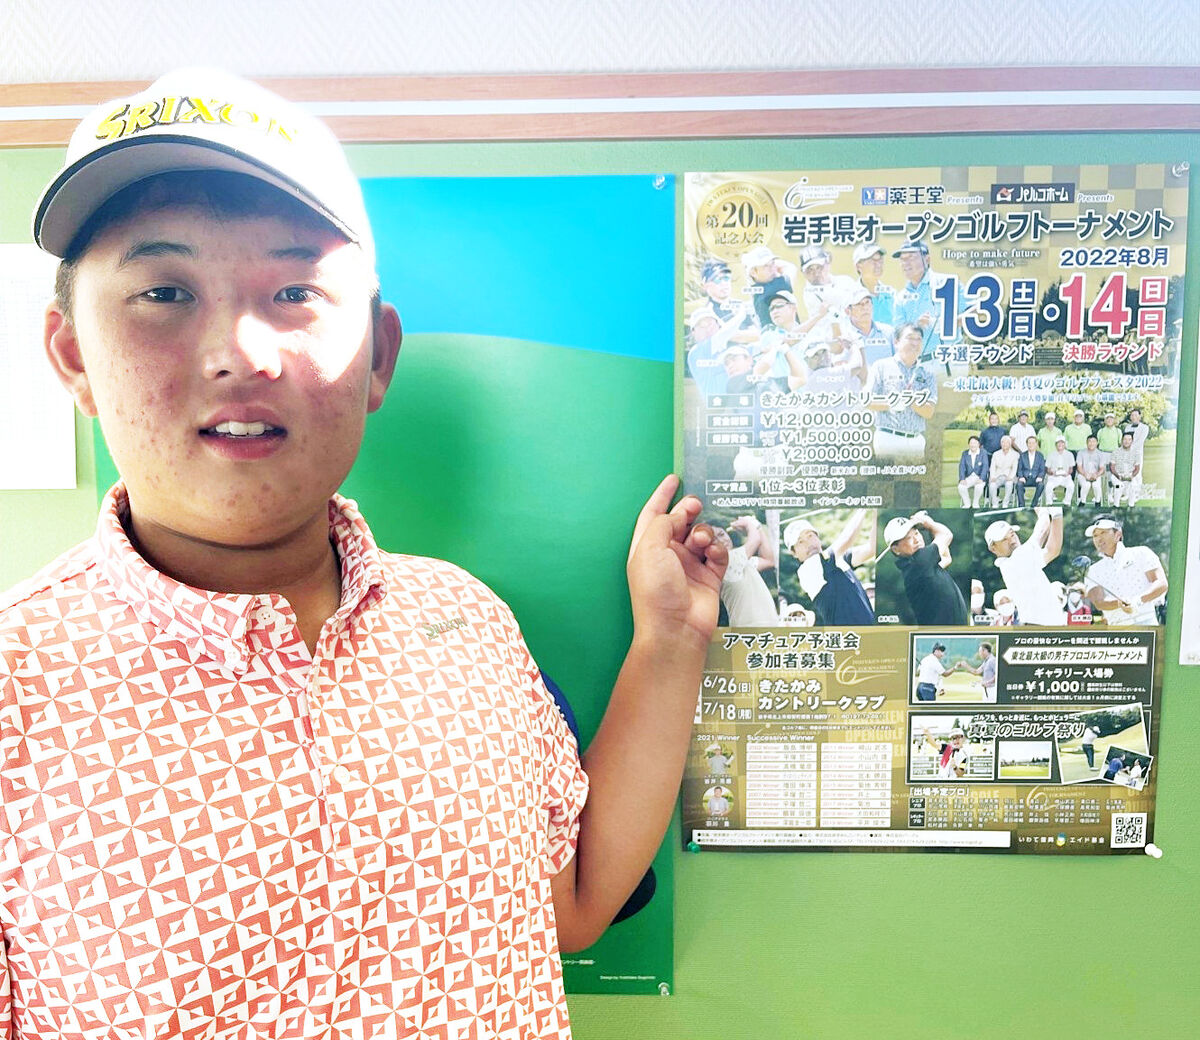 岩手県オープンゴルフトーナメント予選会で最年少トップ通過を果たした香川